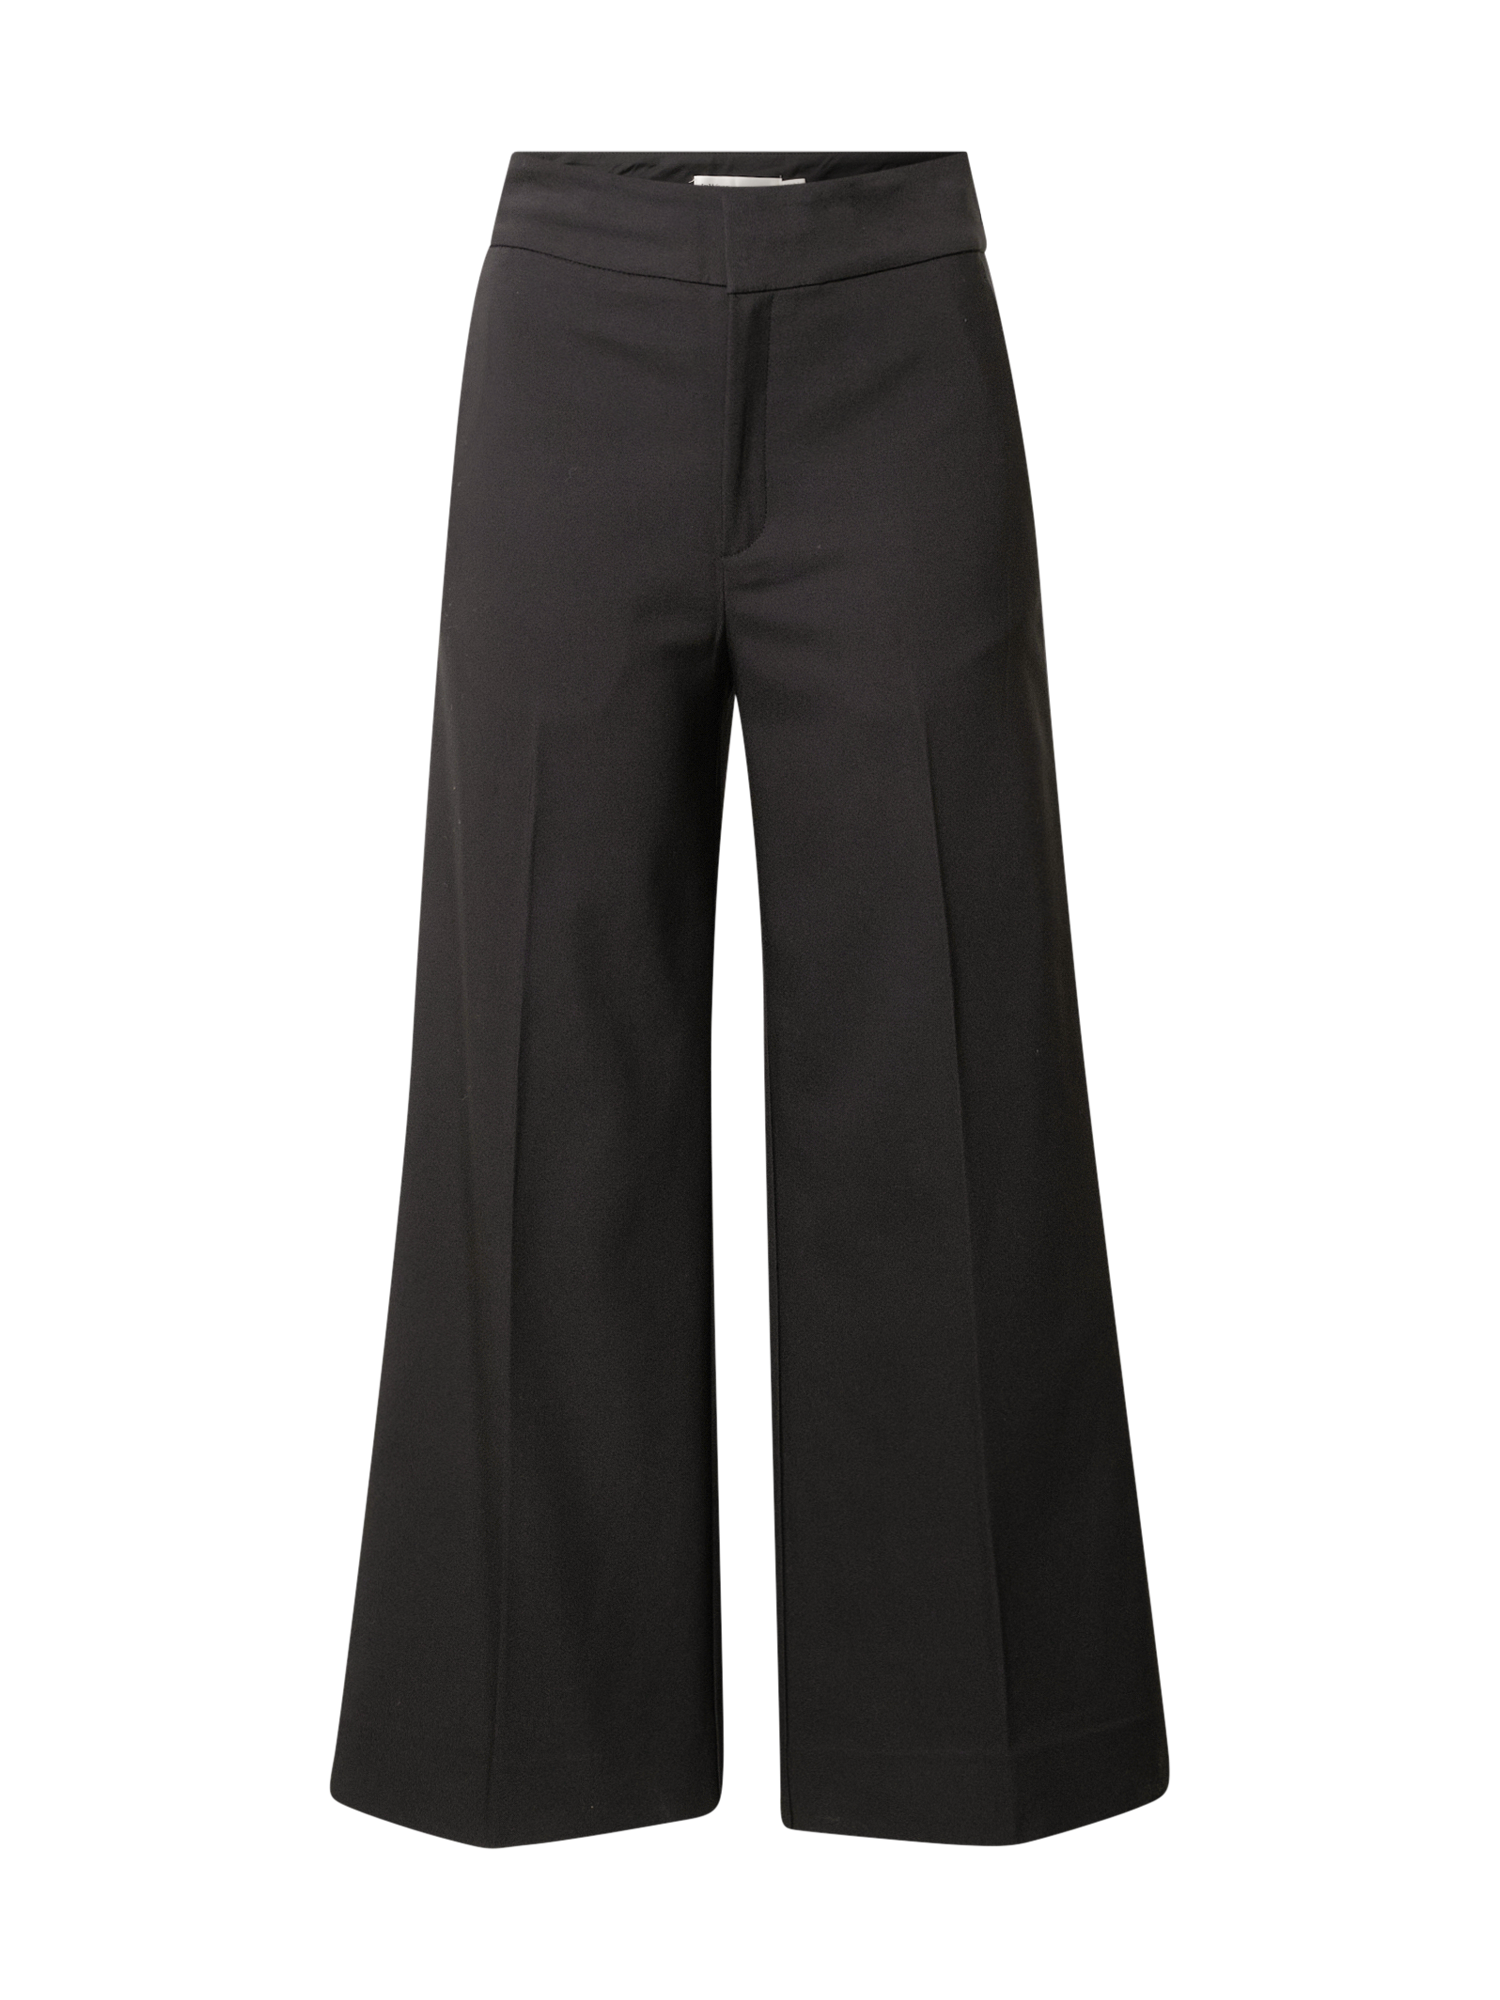 Kobiety Odzież InWear Spodnie ZellaI w kolorze Czarnym 